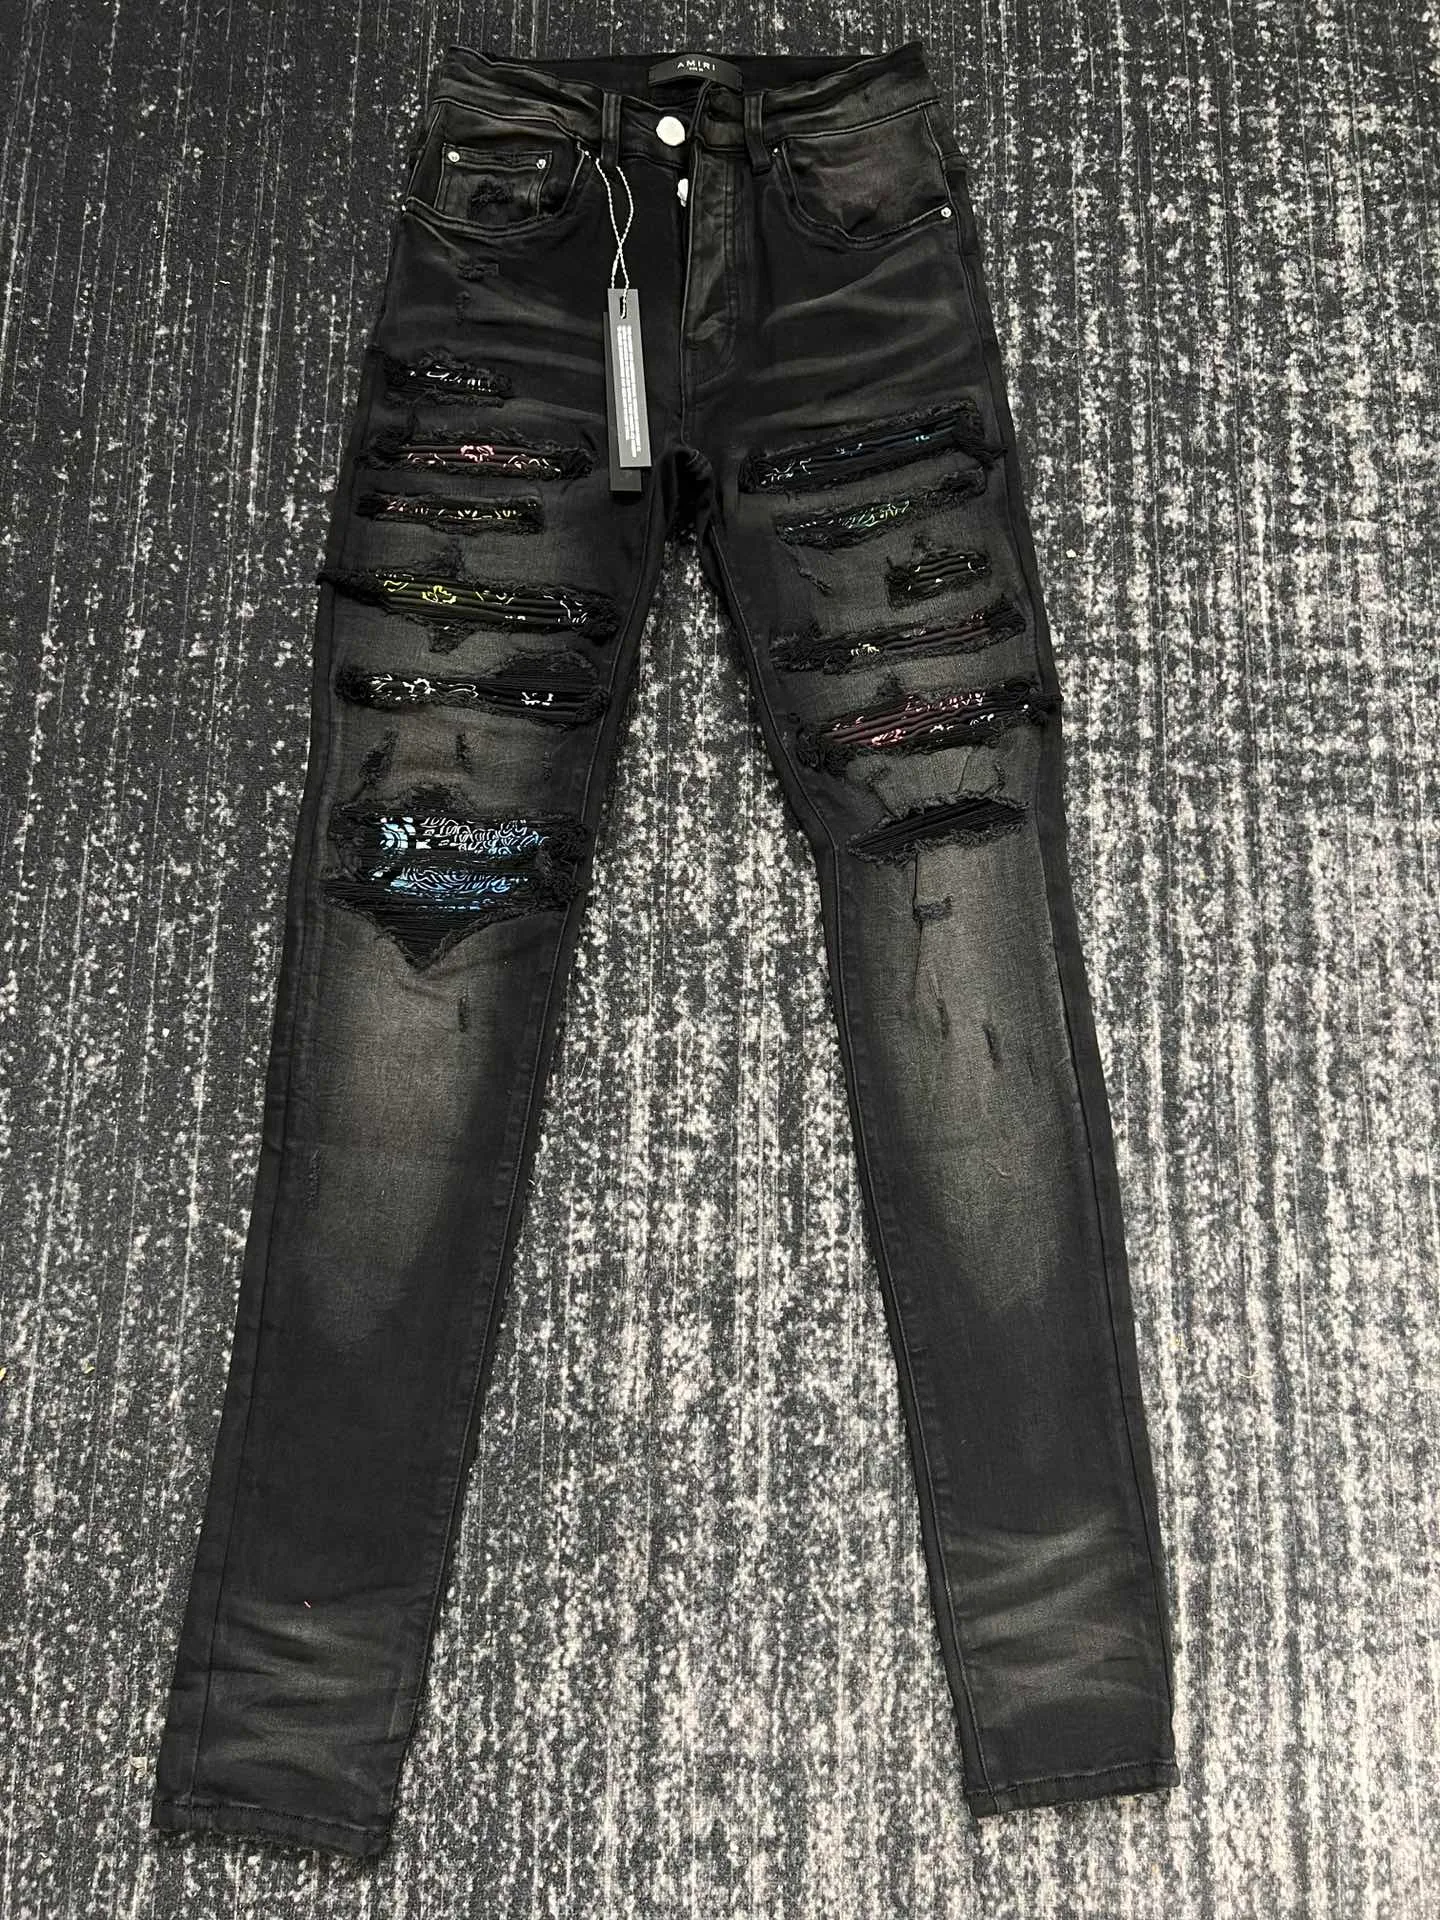 2023 nuevo color hermoso Jeans ajustados desgastados y desgastados para hombre ~ TAMAÑO DE EE. UU. 29-38 jeans ~ motocicleta delgada motociclista pantalones de mezclilla causales jeans de hip hop